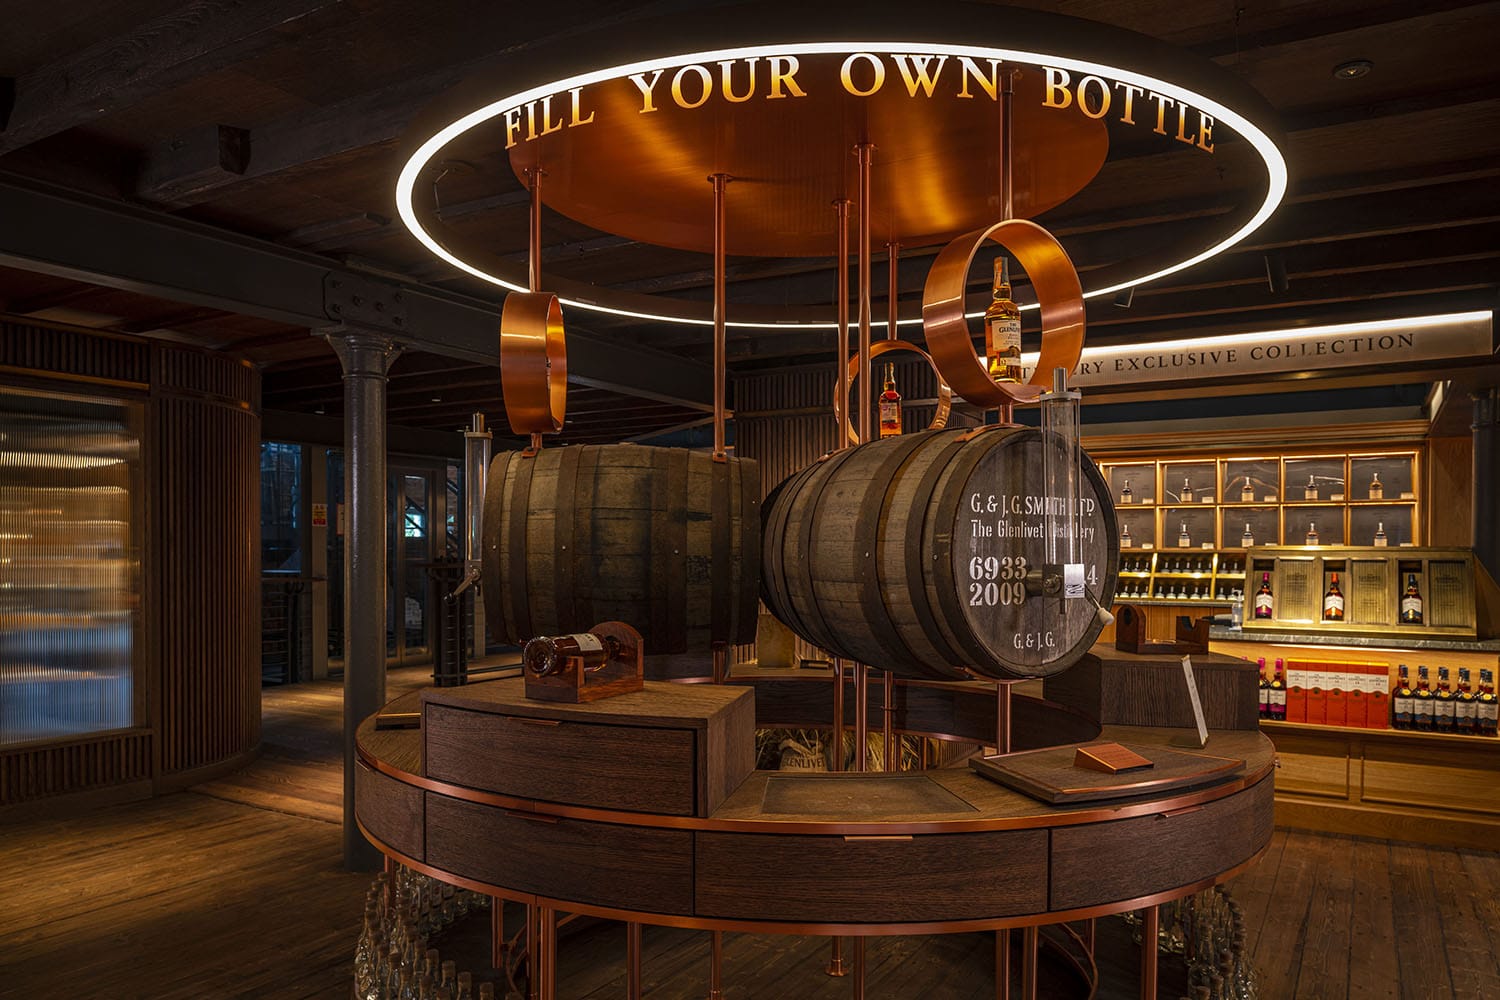 The Glenlivet whisky barrels